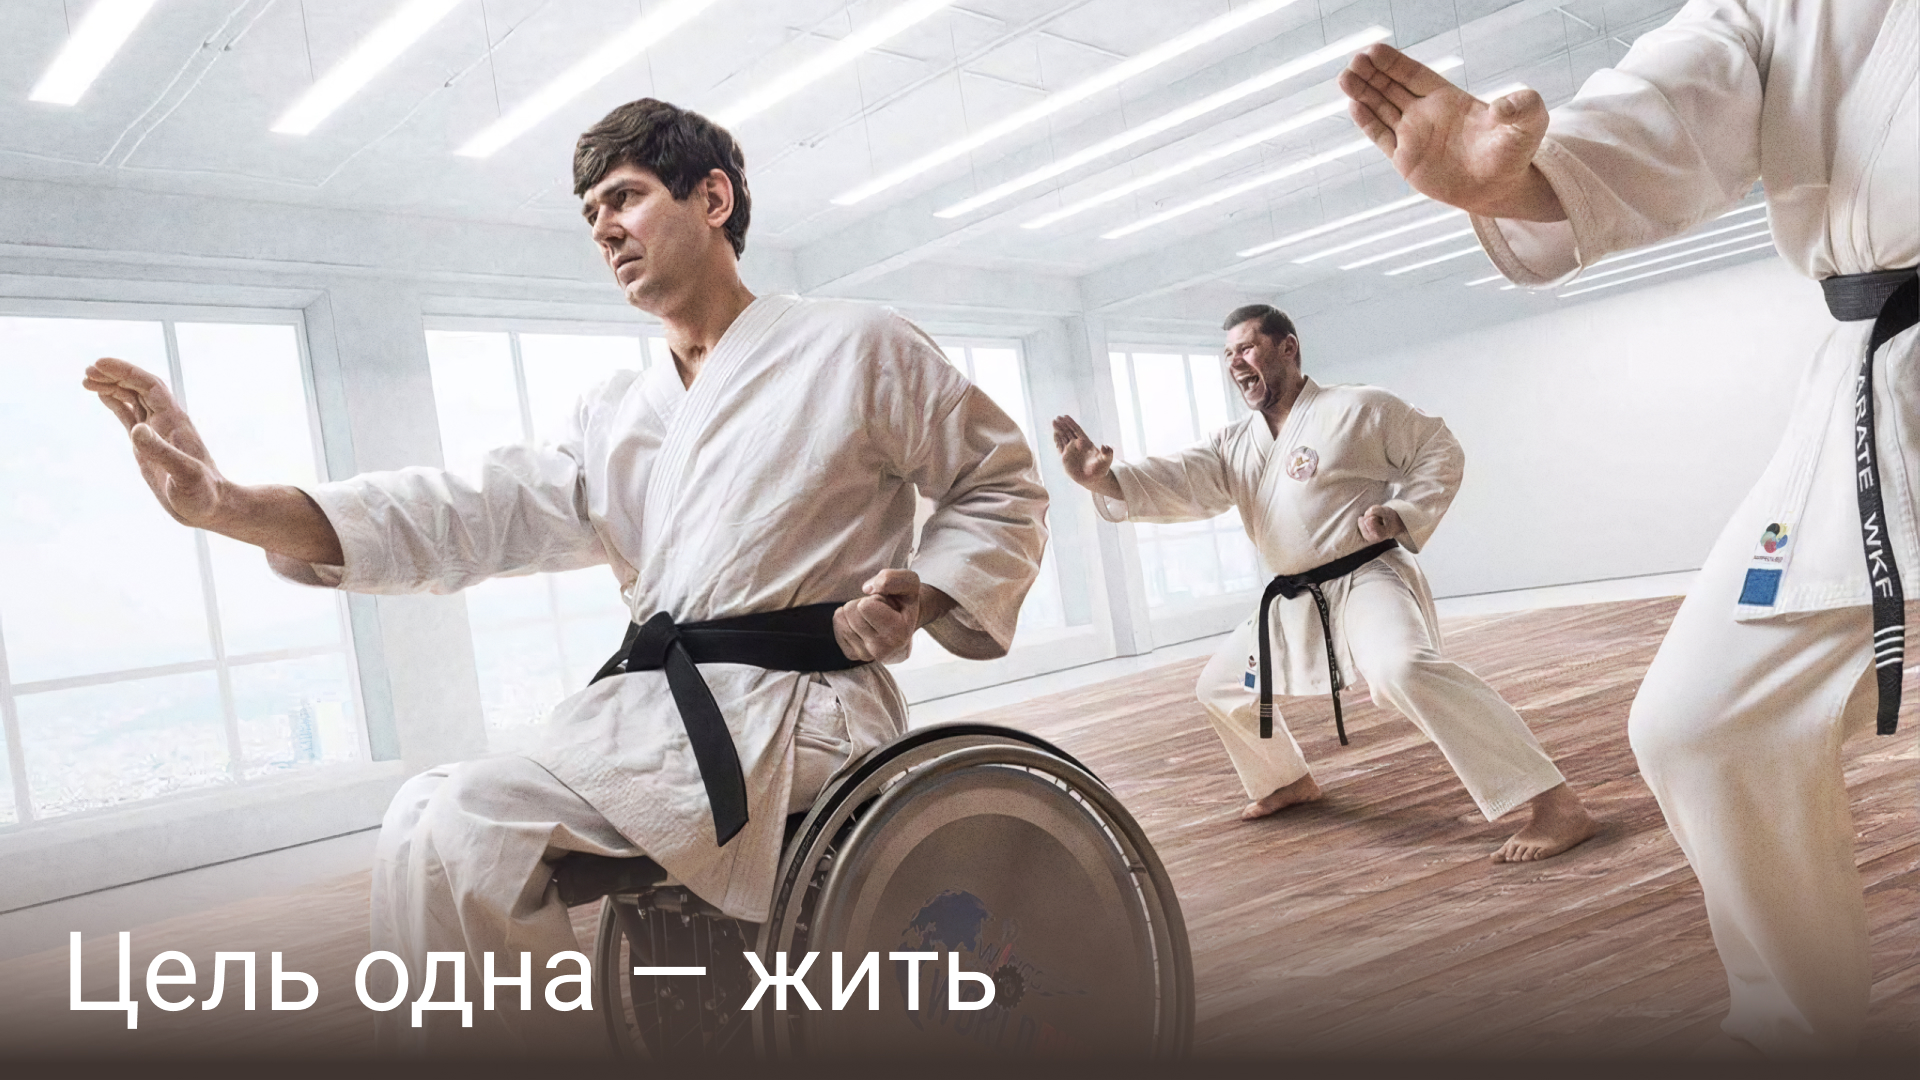 Паралимпийские игры, паралимпийская сборная России, карате